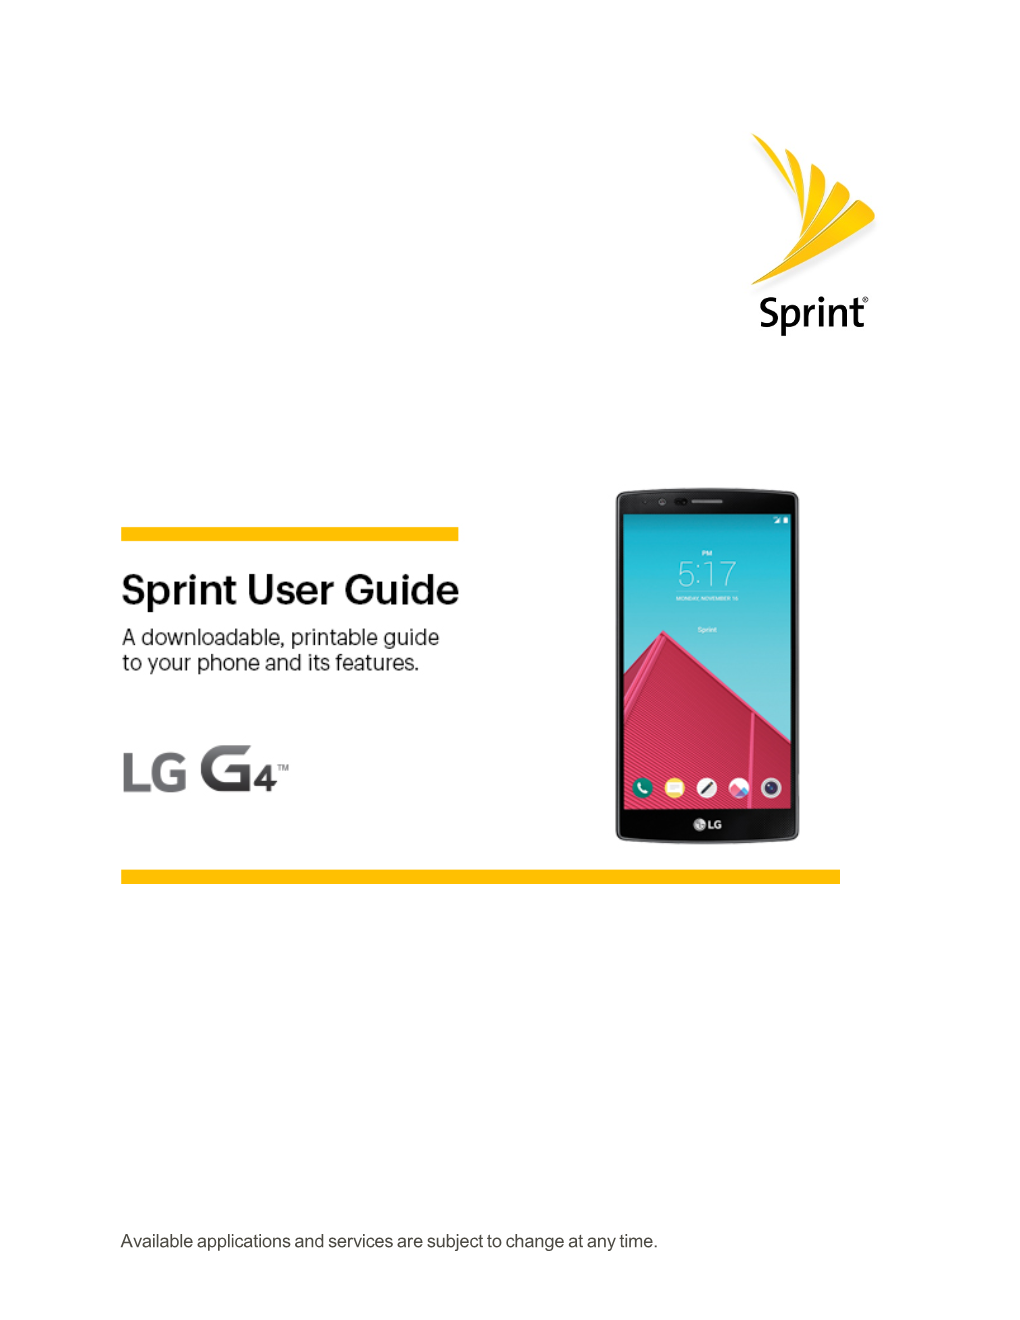 LG G4 User Guide